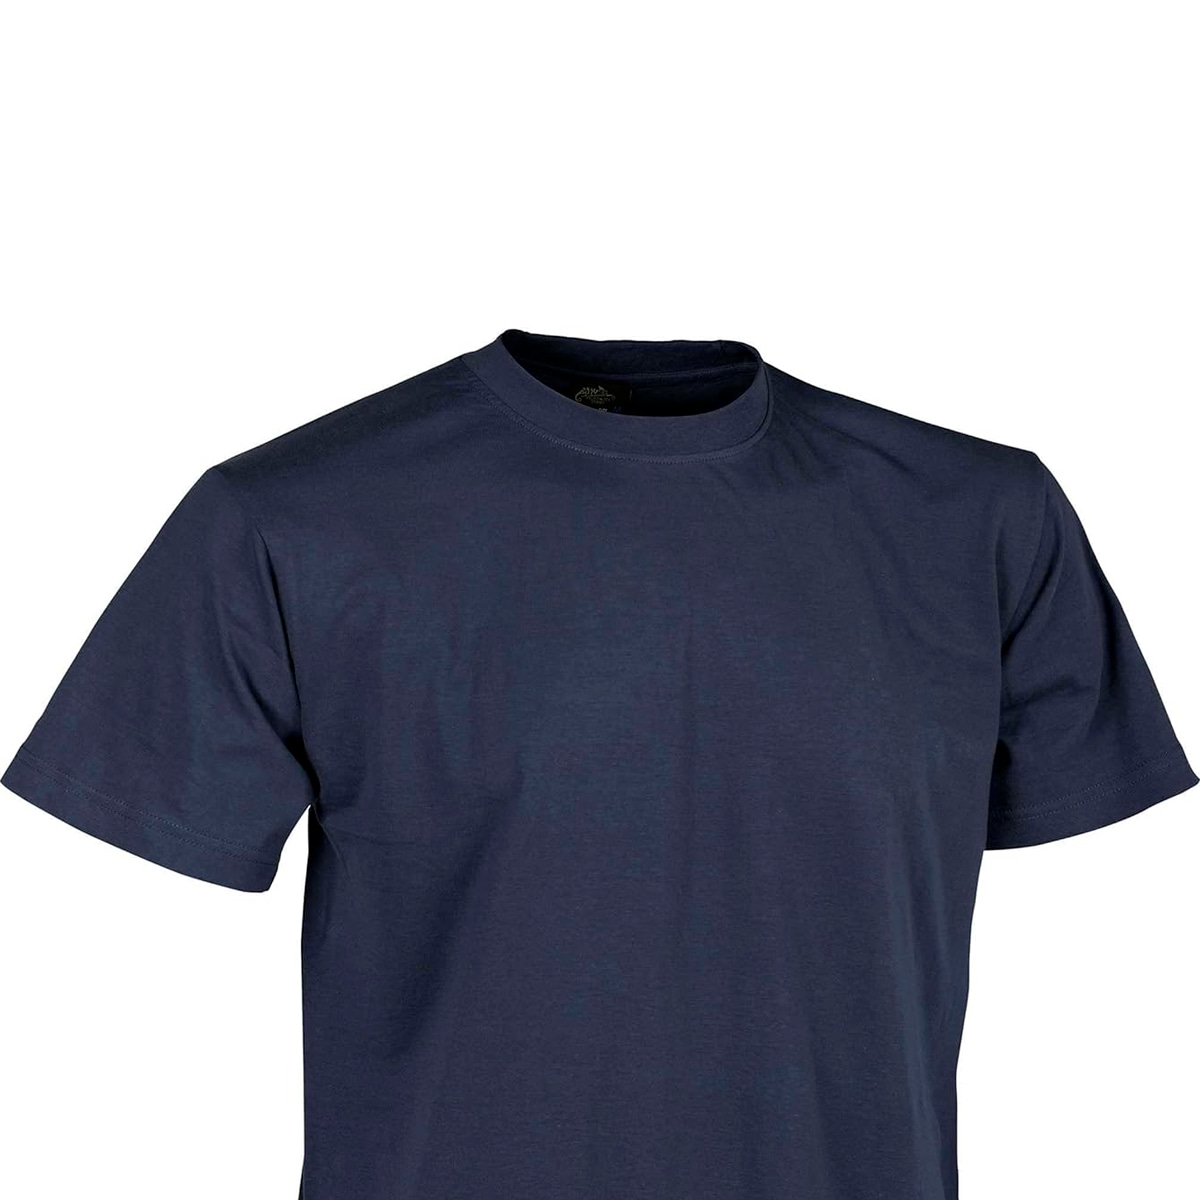 Camiseta básica resistente a la intemperie para hombre, azul, talla M,  Htcadetblue